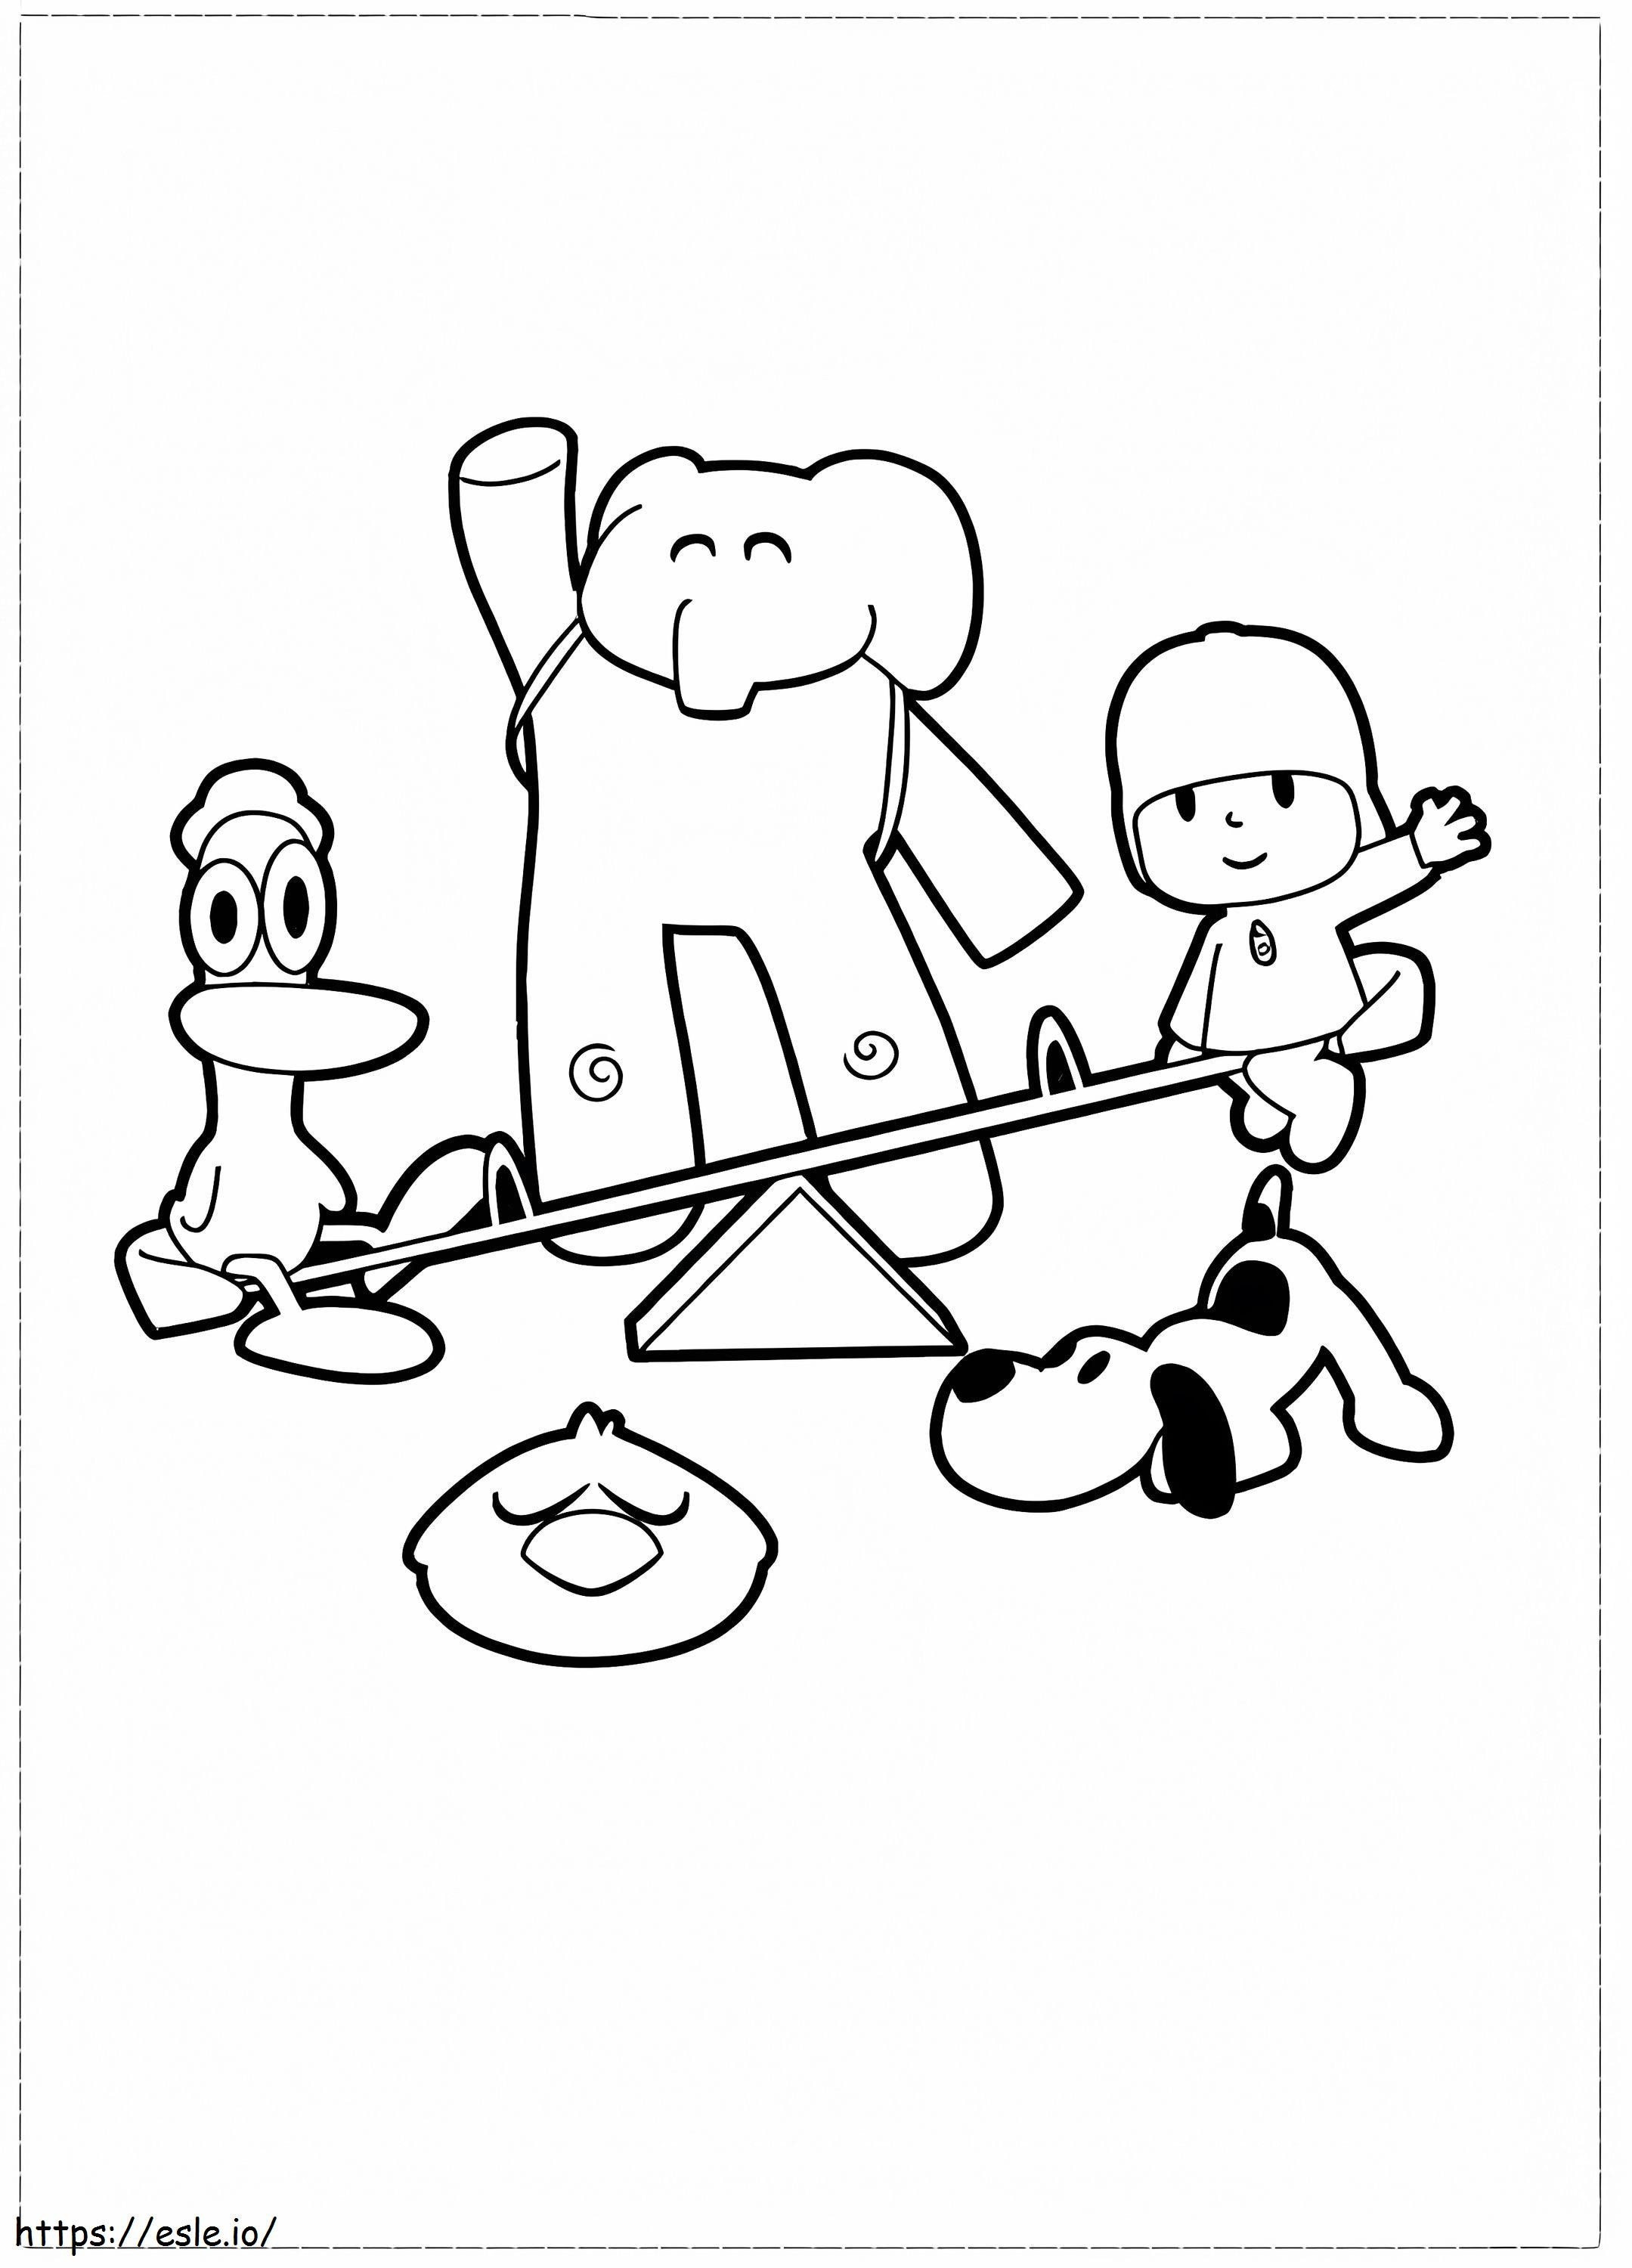 Pocoyo e seus amigos brincando para colorir